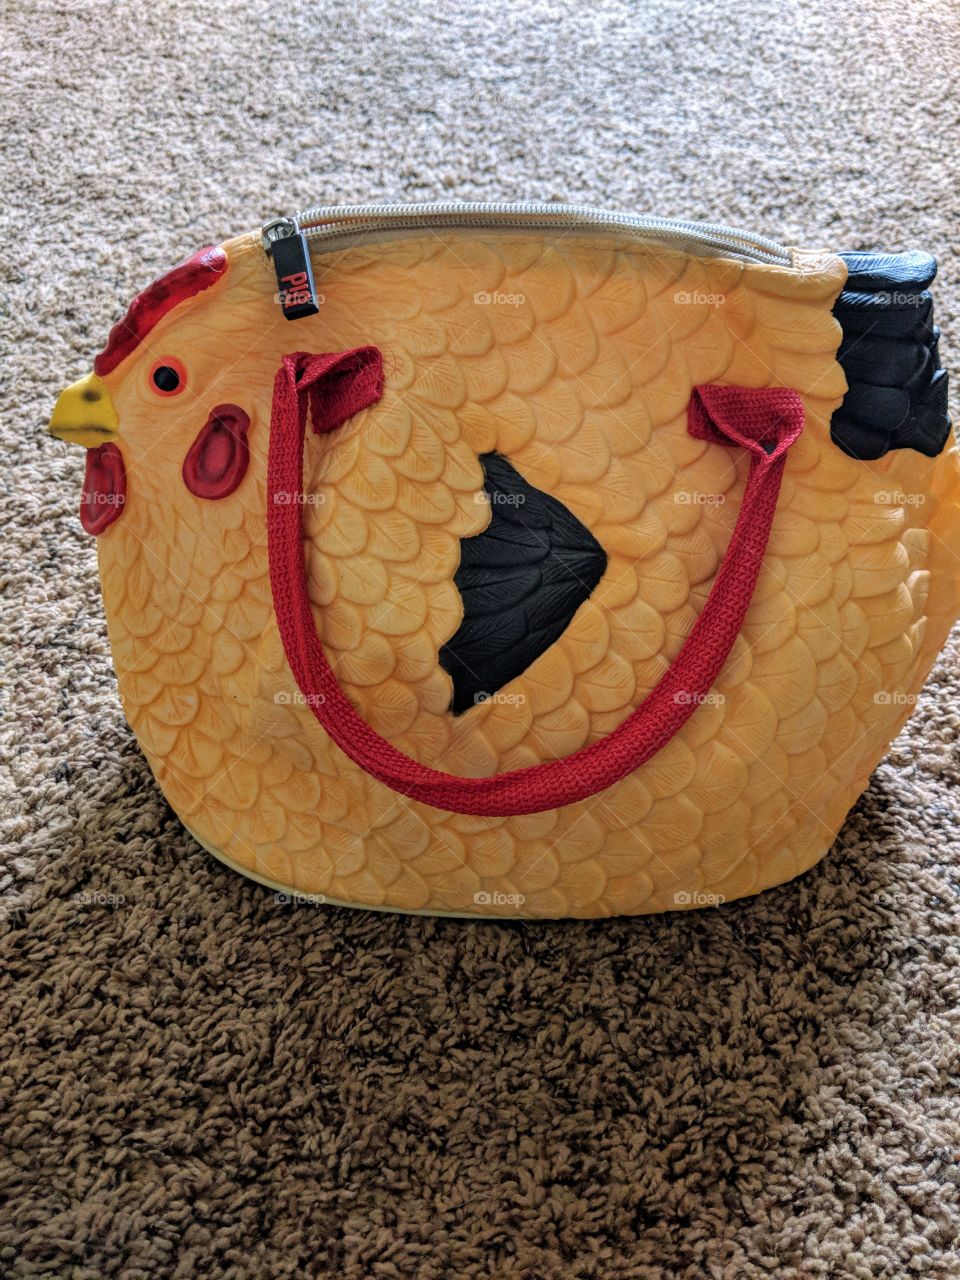 rubber chicken purse